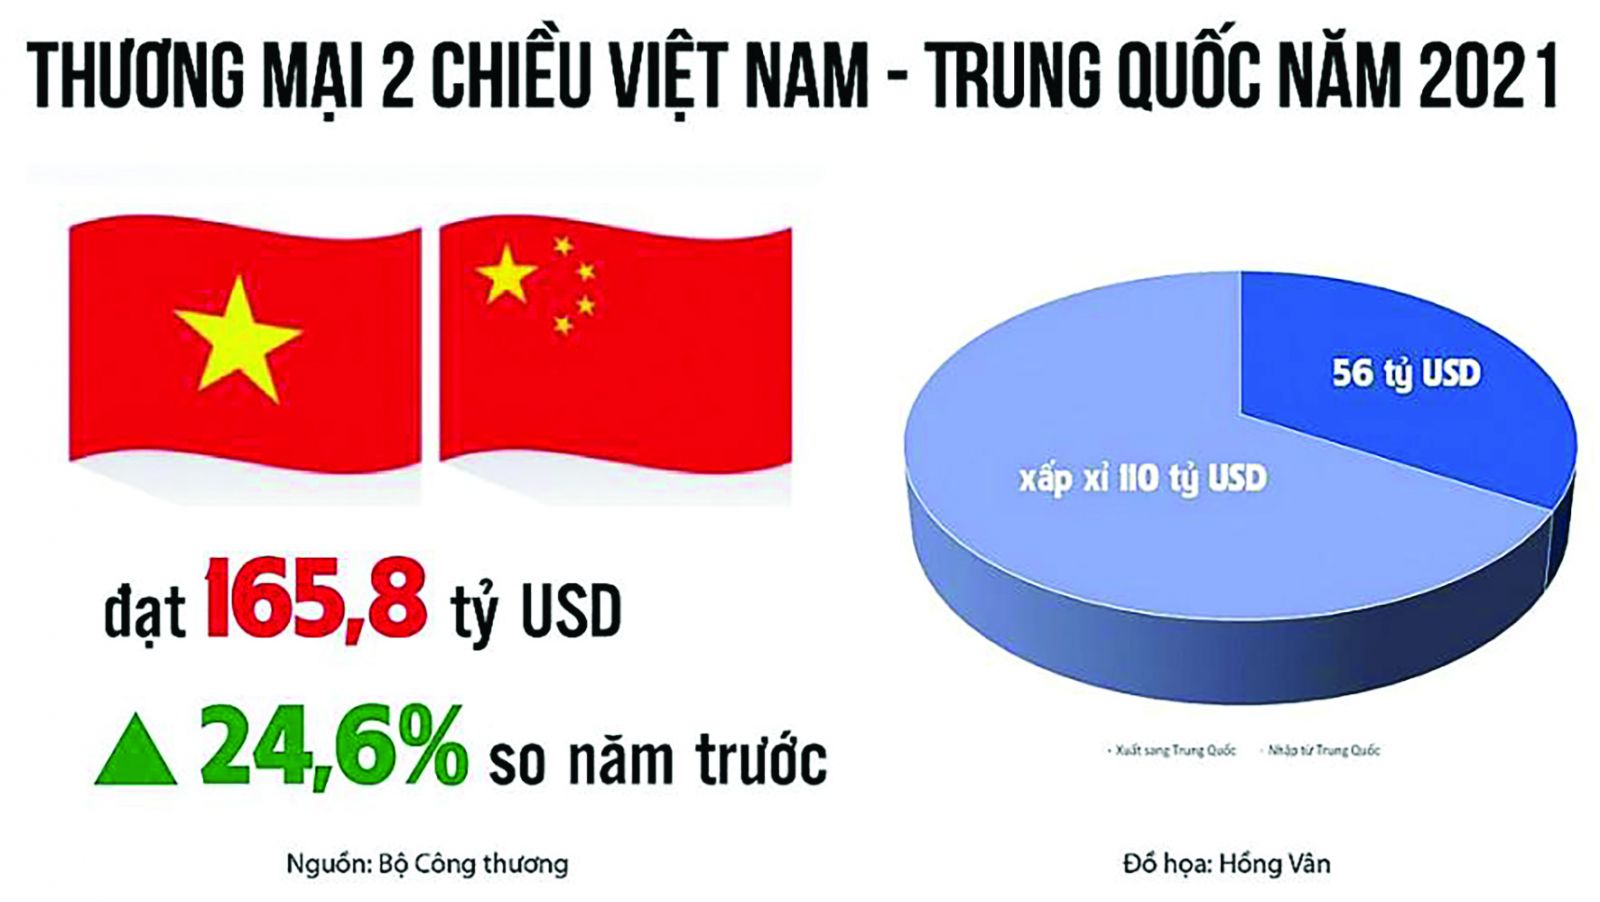  Thương mại 2 chiều Việt Nam - Trung Quốc năm 2021 đạt 165,8 tỷ USD, tăng 24,6% so năm 2020.